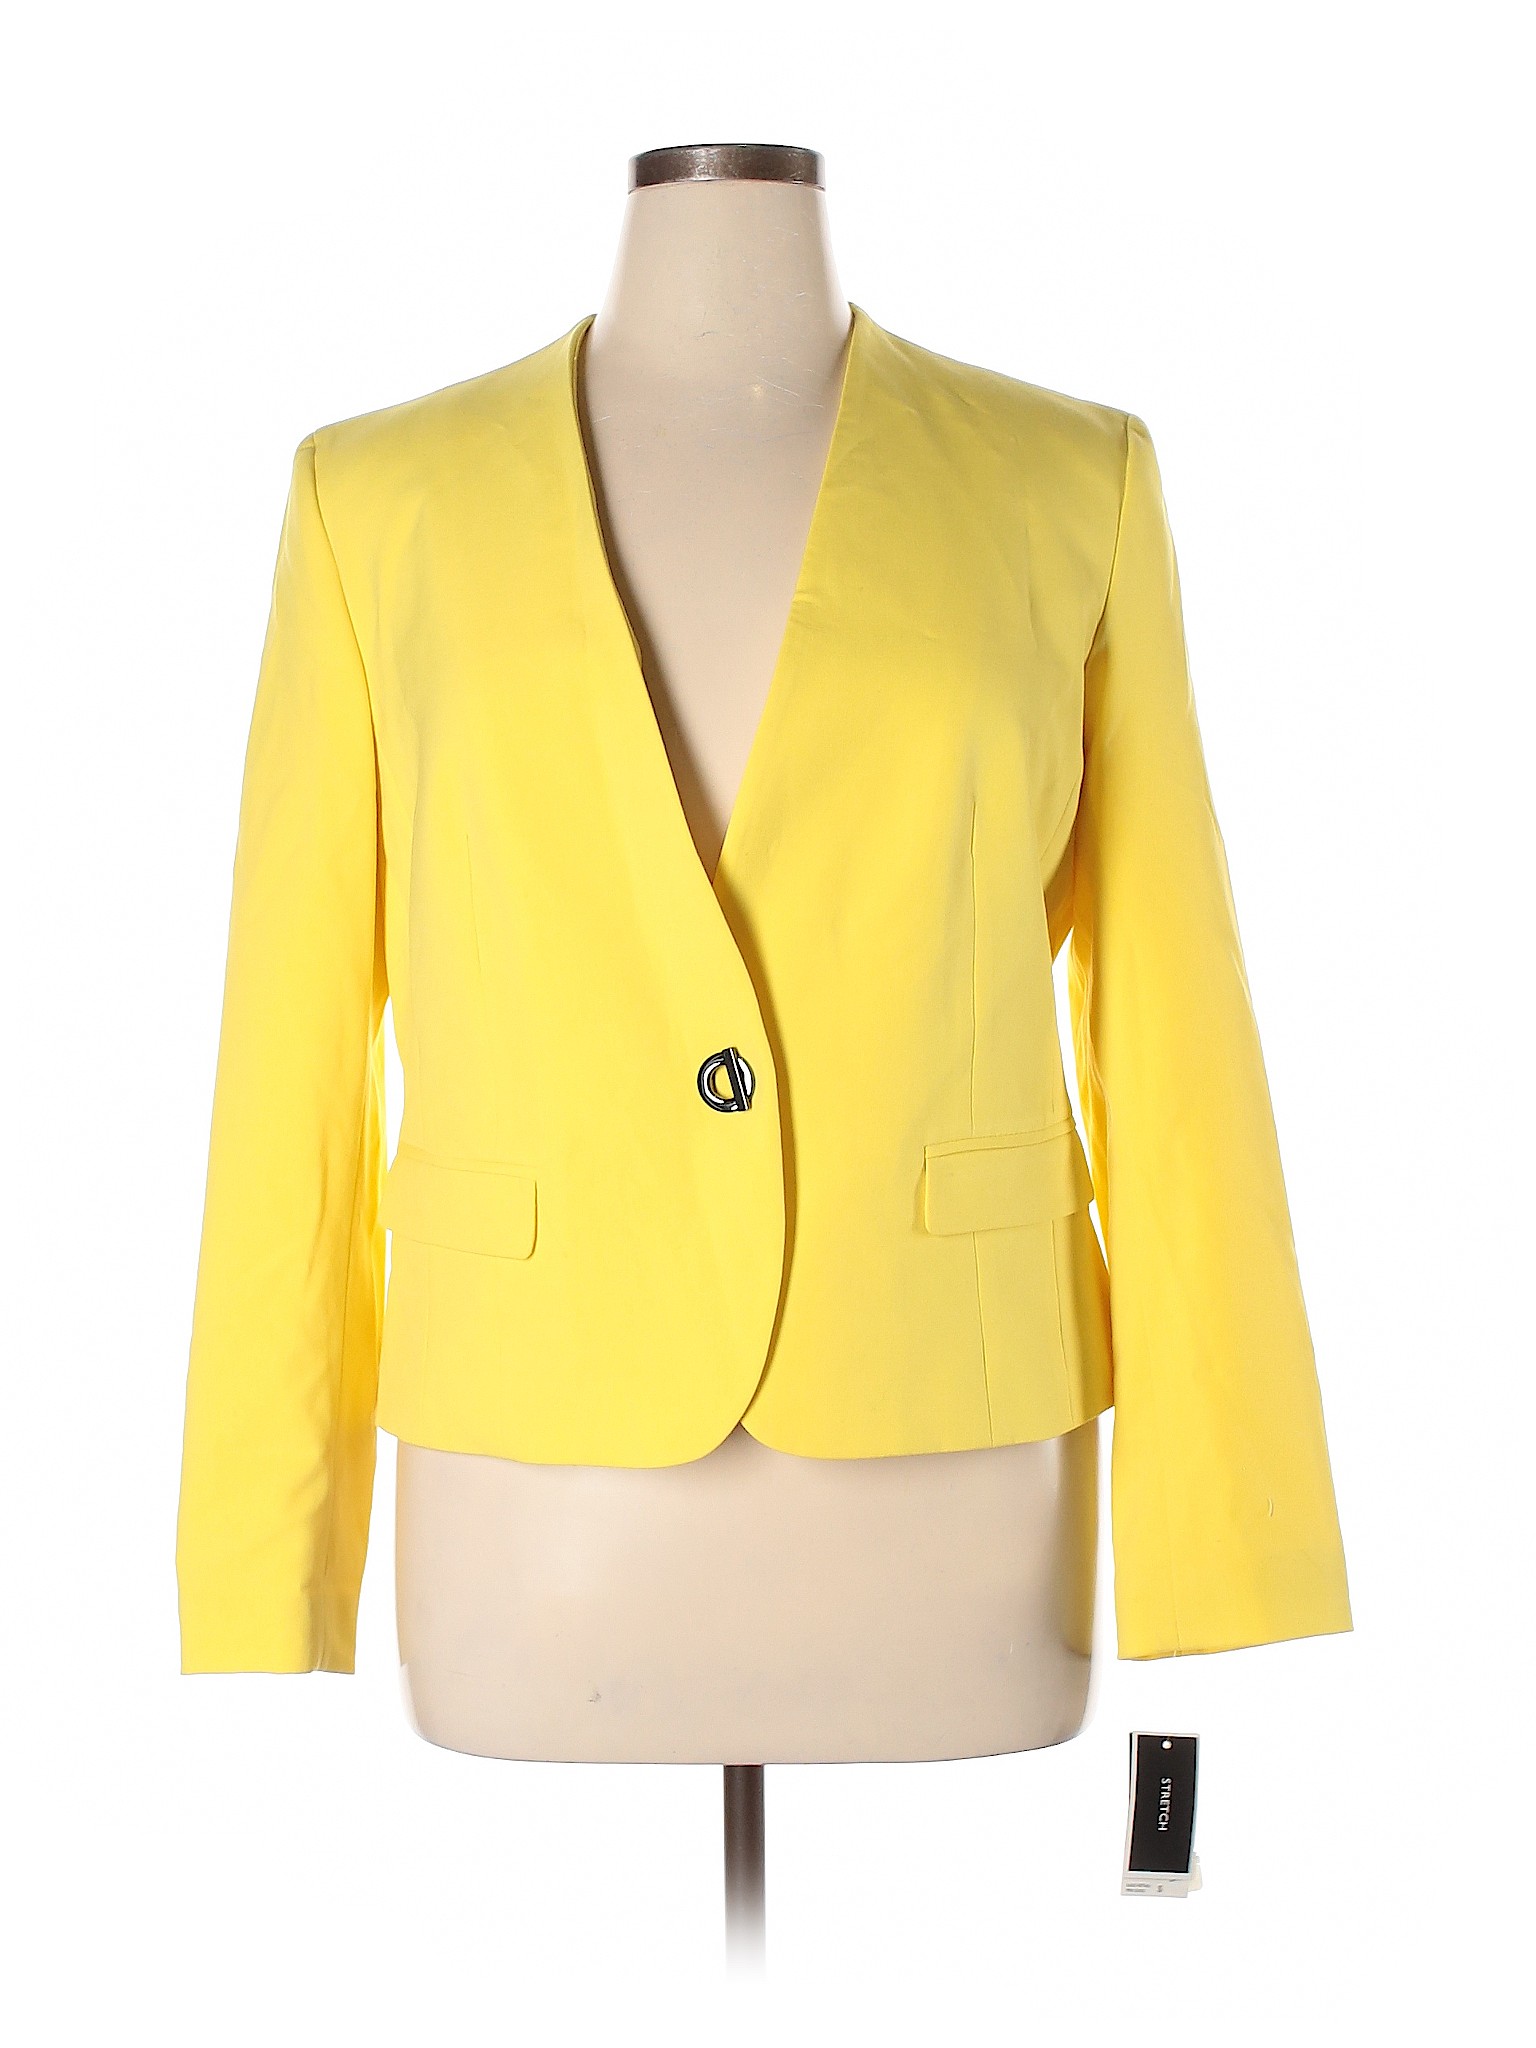 NWT Nine West Women Yellow Blazer 14 | eBay